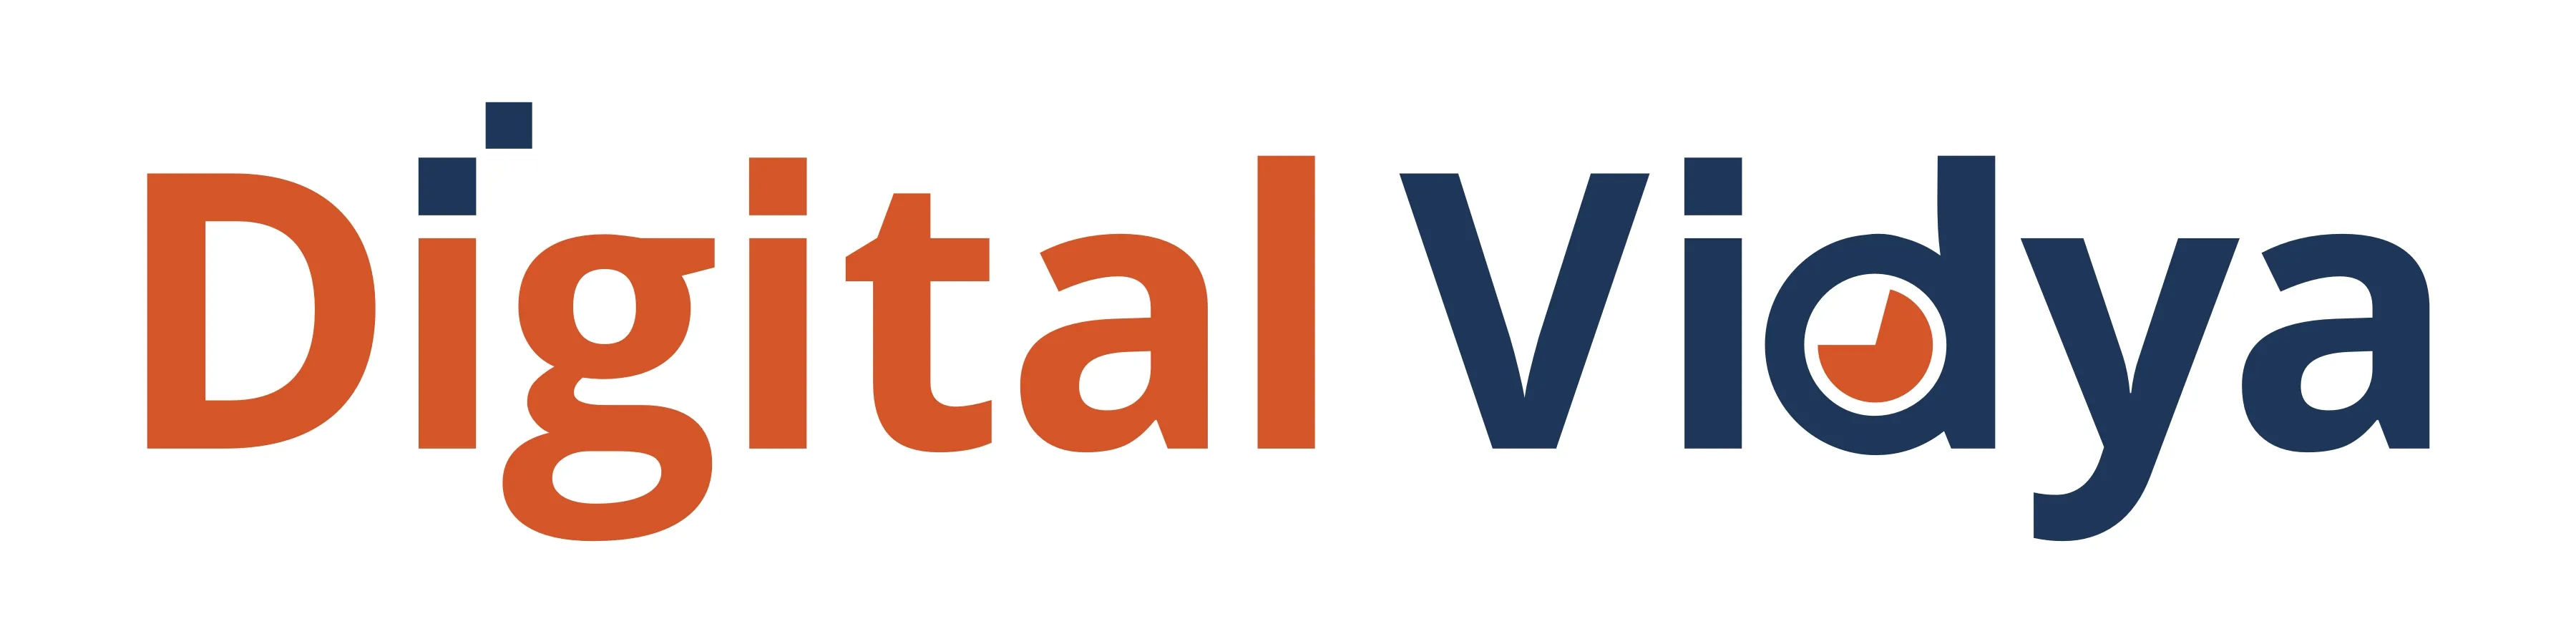 Digital Marketing Courses In Gulbarga- Digital Vidya logo